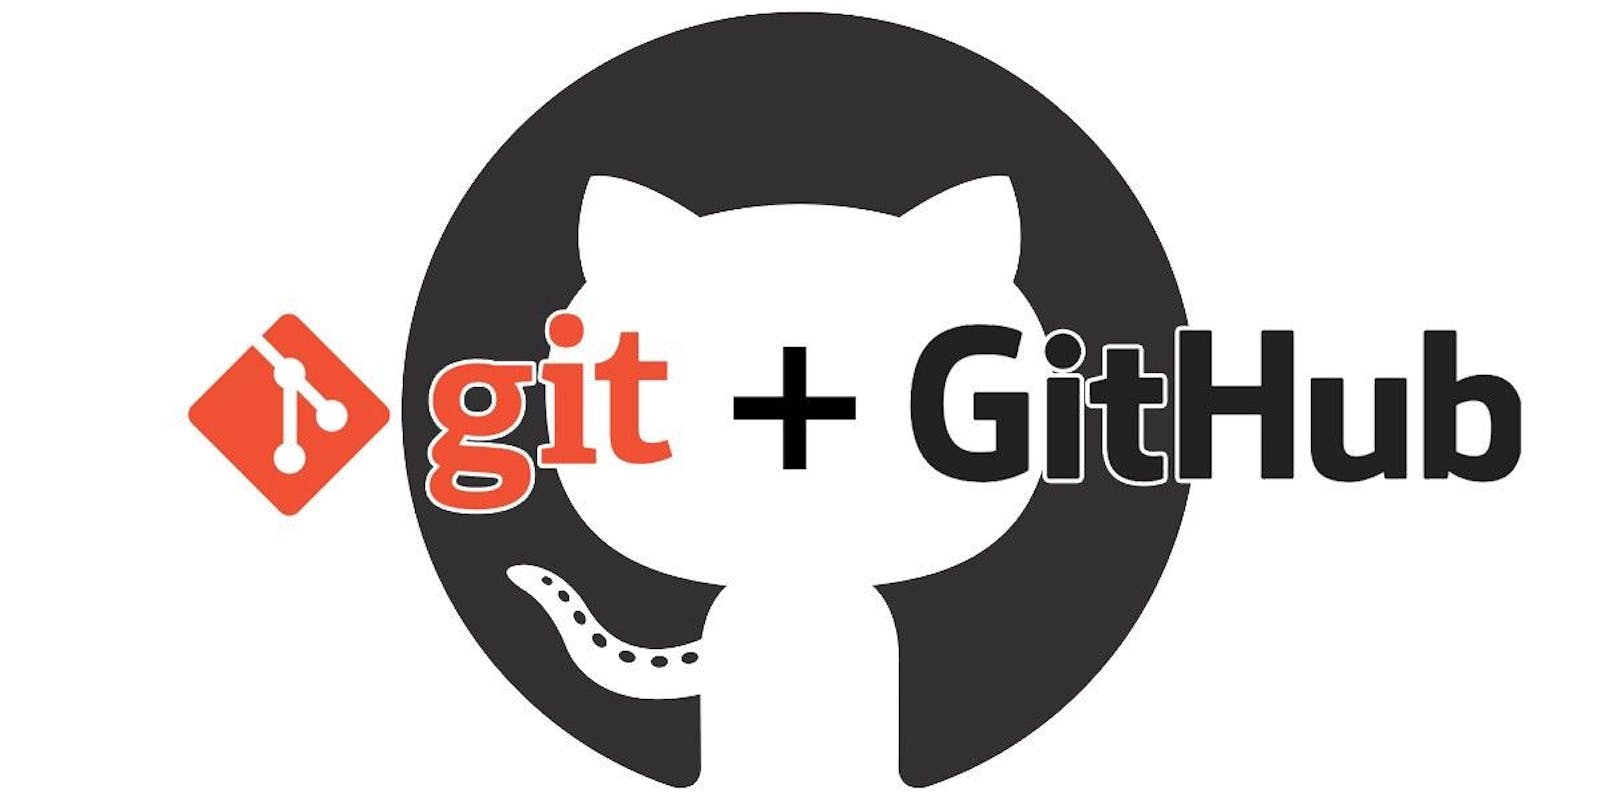 Git help